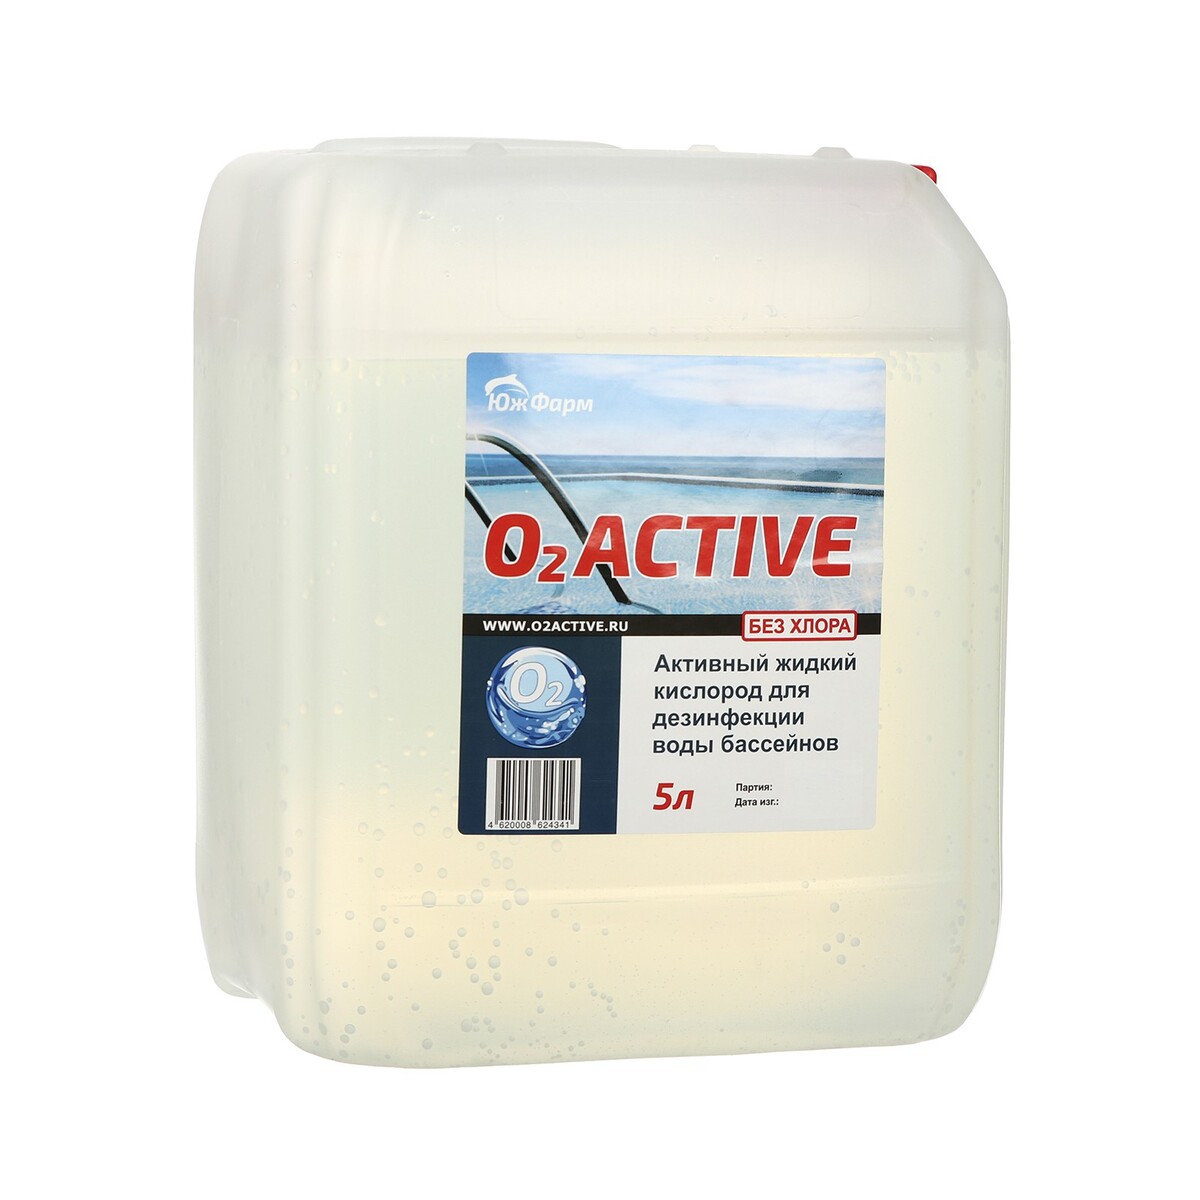 О2 active, средство для дезинфекции воды бассейнов, 5 л bayrol быстрорастворимый хлор для ударной дезинфекции воды chlorifix 1 кг